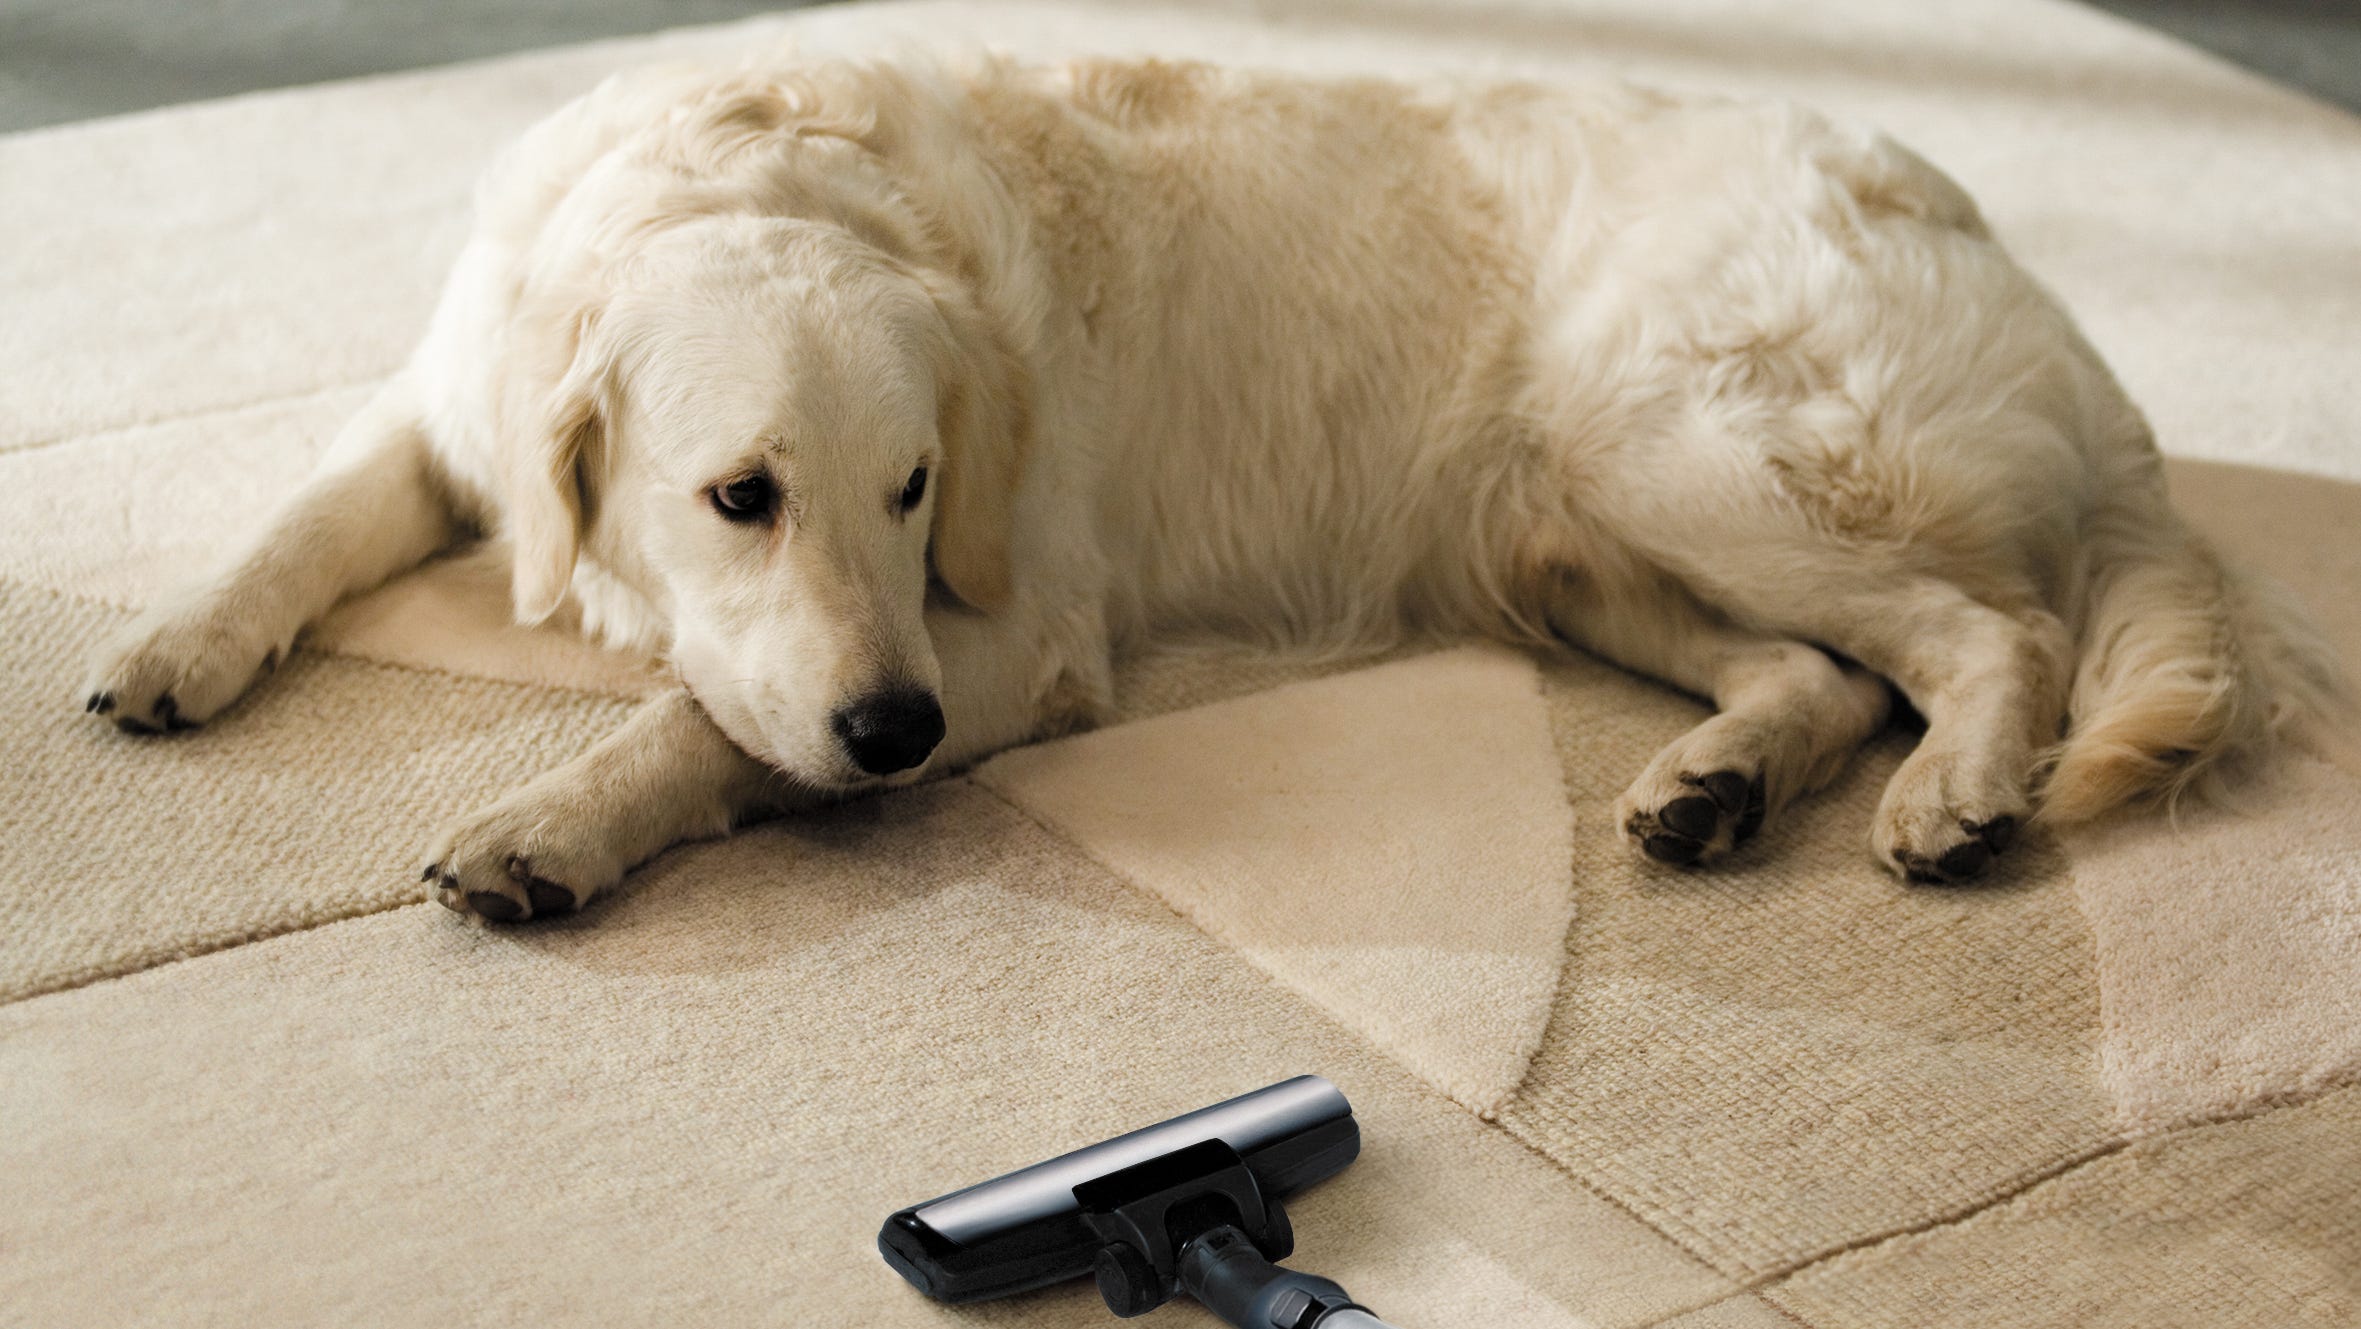 Pet cleaning. Животные на ковре. Собака на ковре. Шерсть от животных на ковре. Для чистки ковров от шерсти животных.